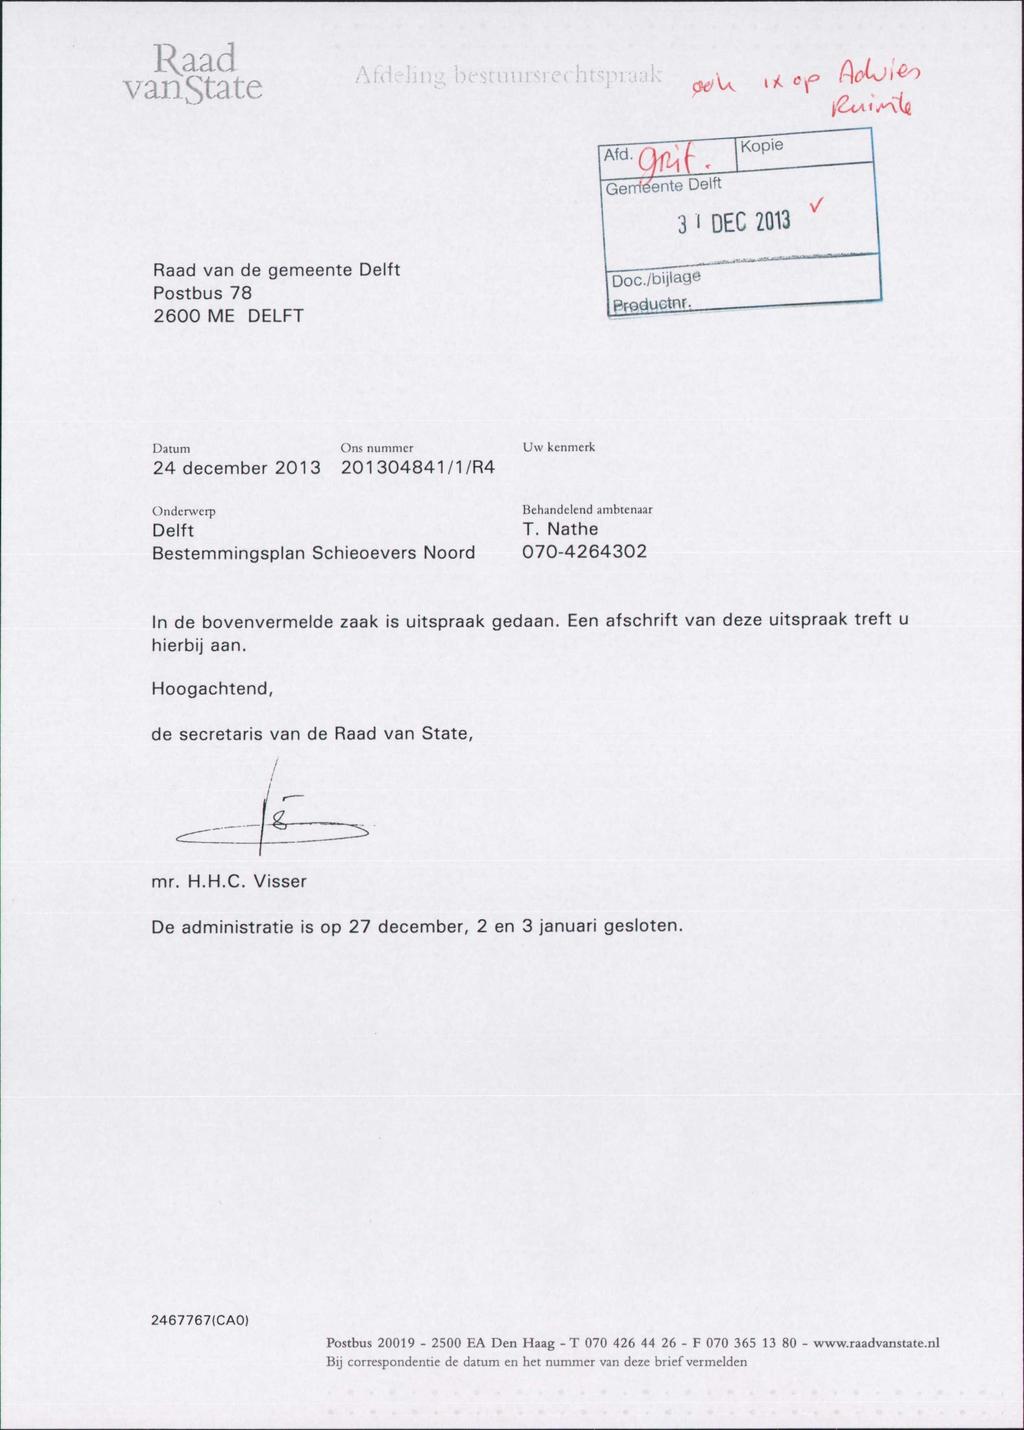 VanState AfdeJing bestuursrechtspraak ^ ^ cf AoUito Geirï^enteDeltt Kopie 31 DEC 2013 Raad van de gemeente Delft Postbus 78 2600 ME DELFT Doc./bijlage Productnr.